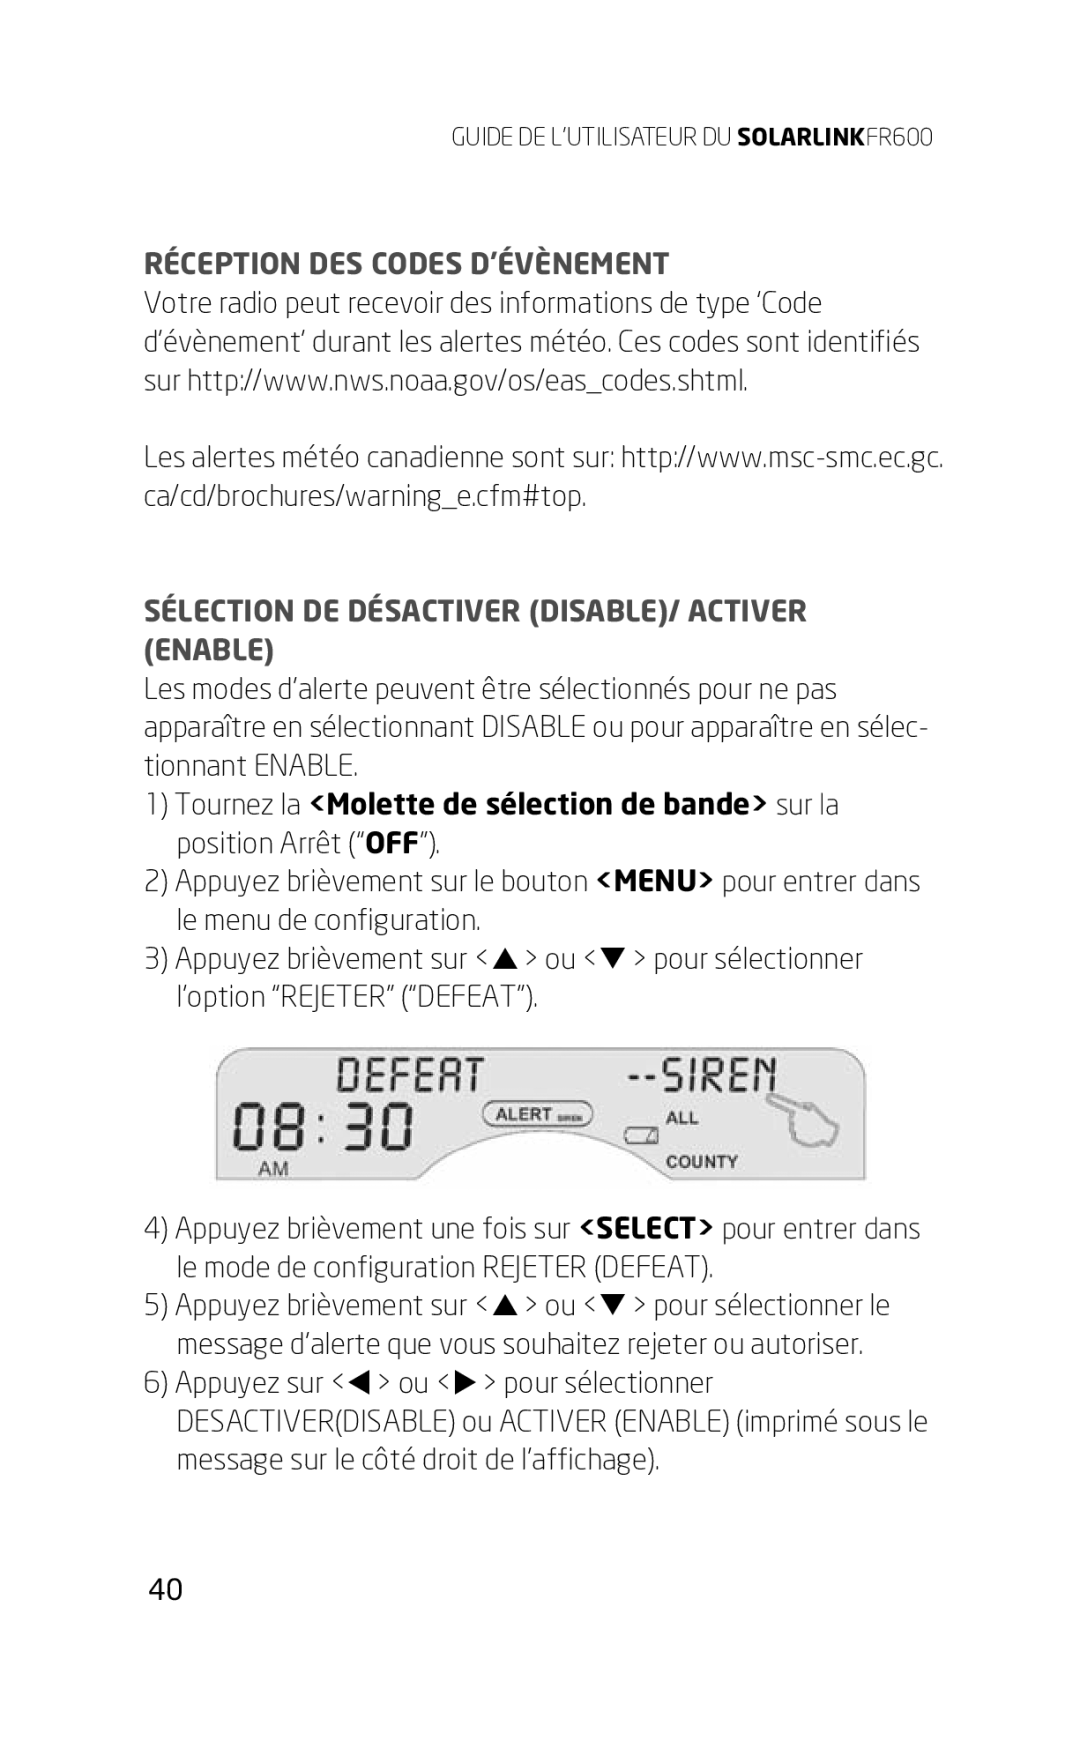 Eton FR600 owner manual Réception Des Codes D’Évènement, Sélection De Désactiver Disable/ Activer Enable 